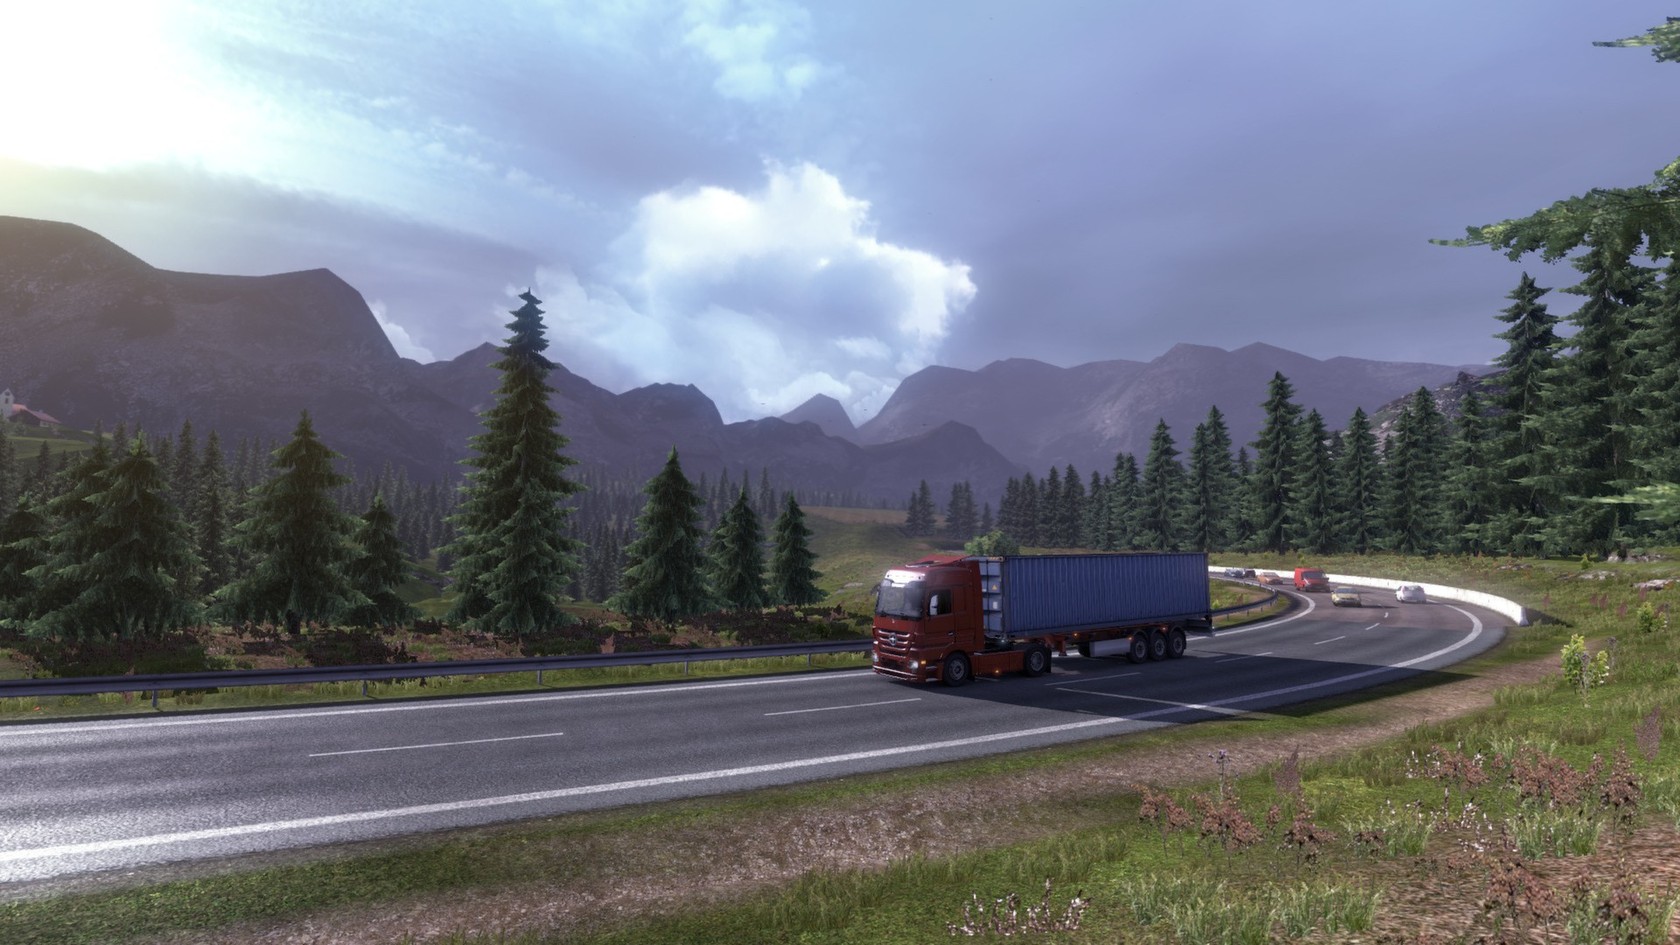 Euro truck simulator 2 mac download free. full version